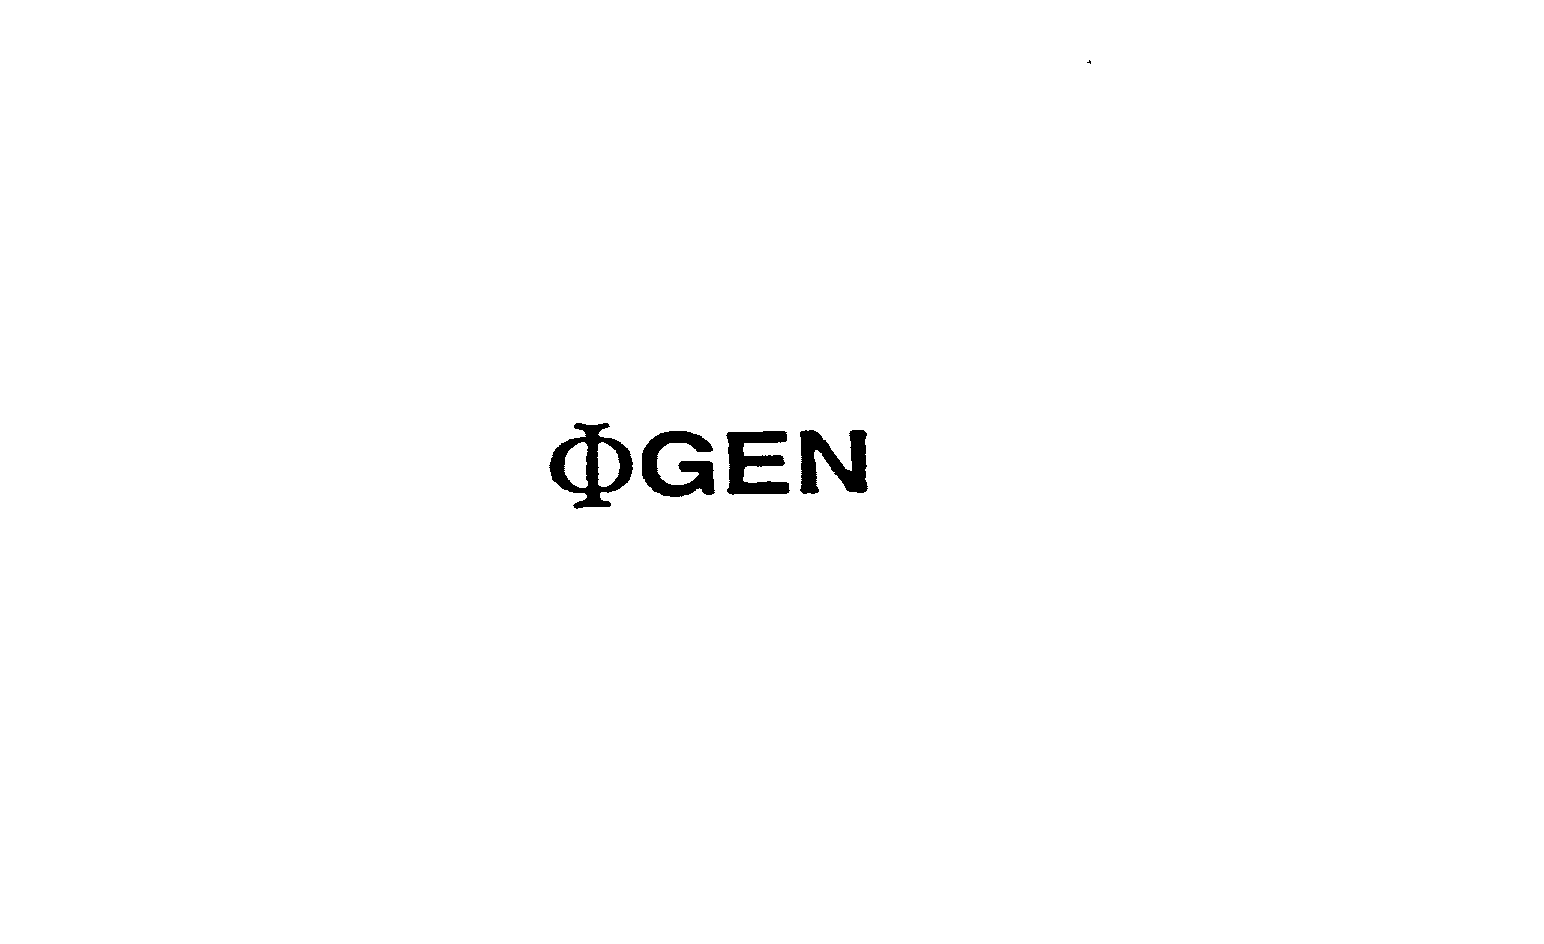 Trademark Logo GEN